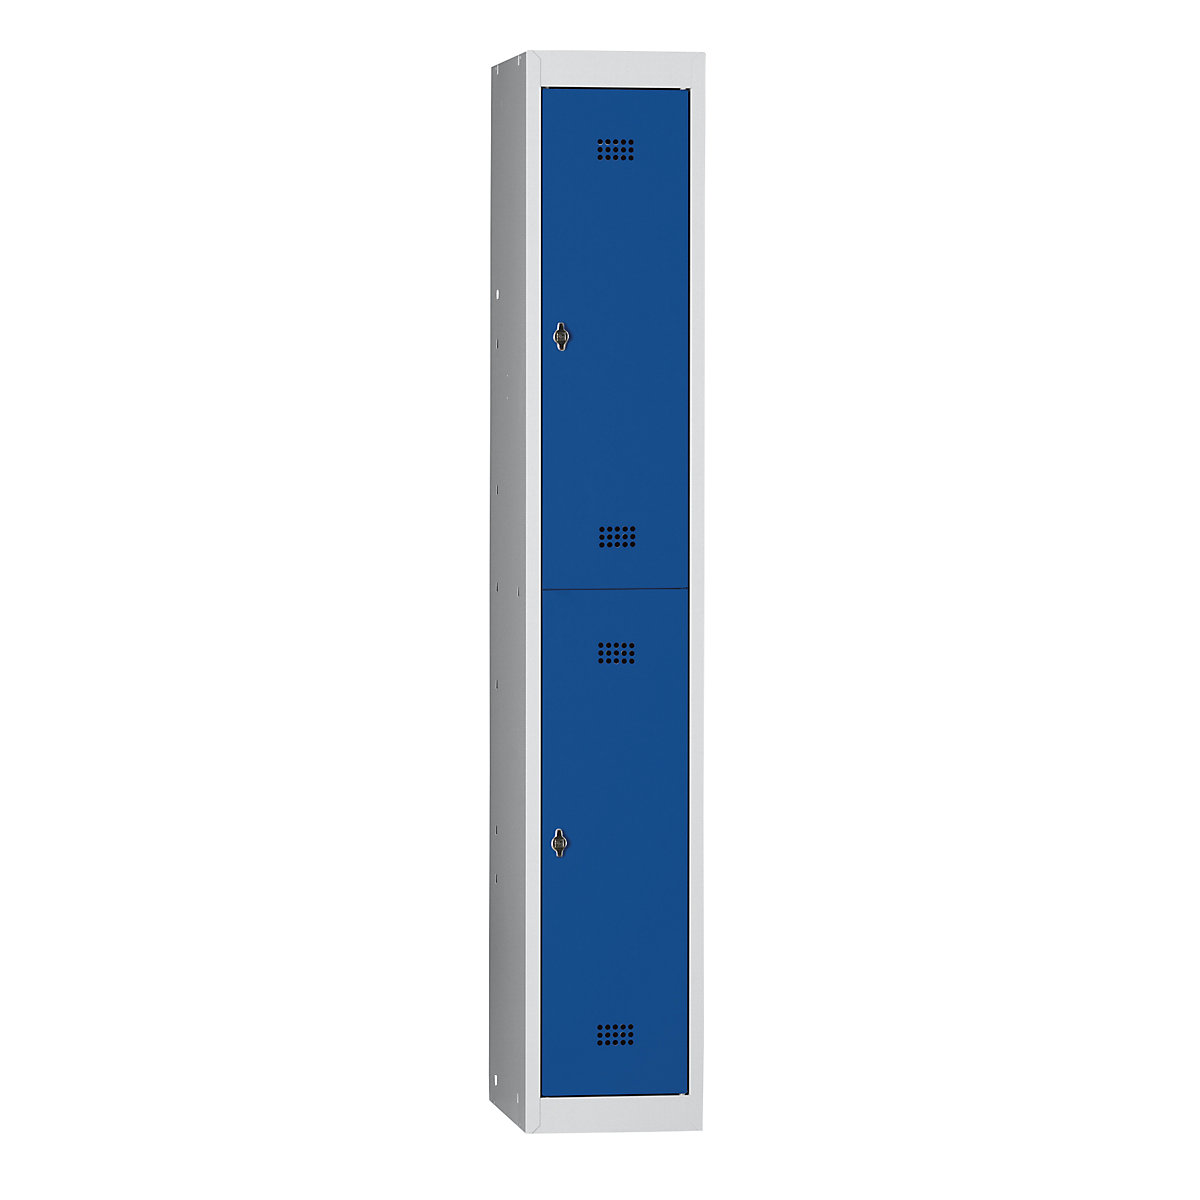 Ocelová skříňka – Wolf, s vypalovaným nátěrem, 2 oddíly, výška 840 mm, šířka 300 mm, 1 tyč na oděvy, základní prvek, světlá šedá / enciánová modrá